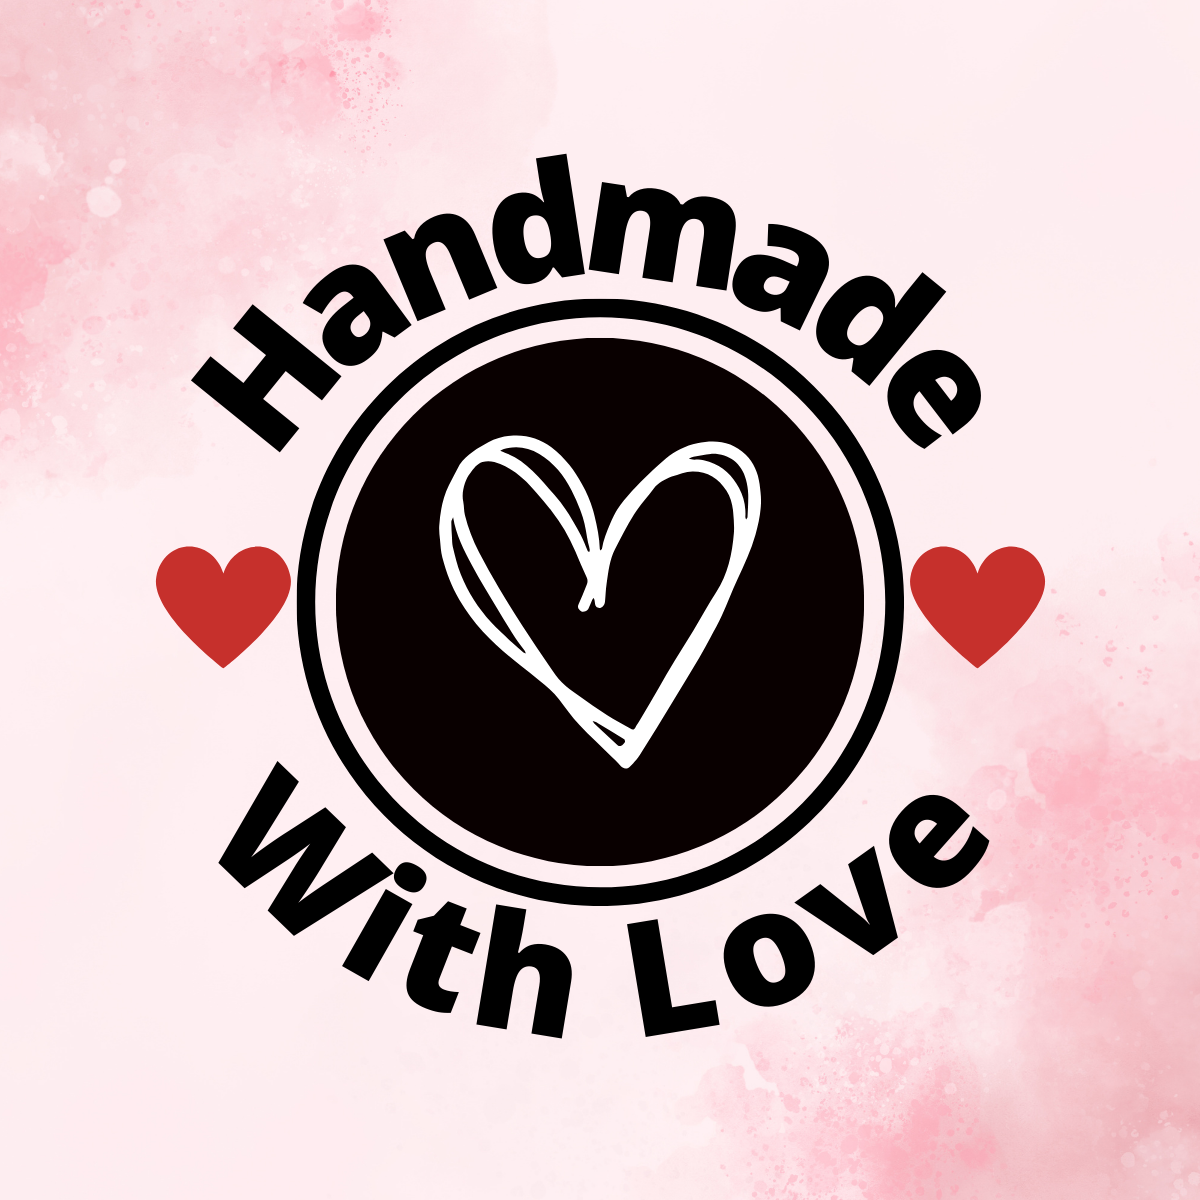 Handmade with love, Handgemaakte en gepersonaliseerde producten